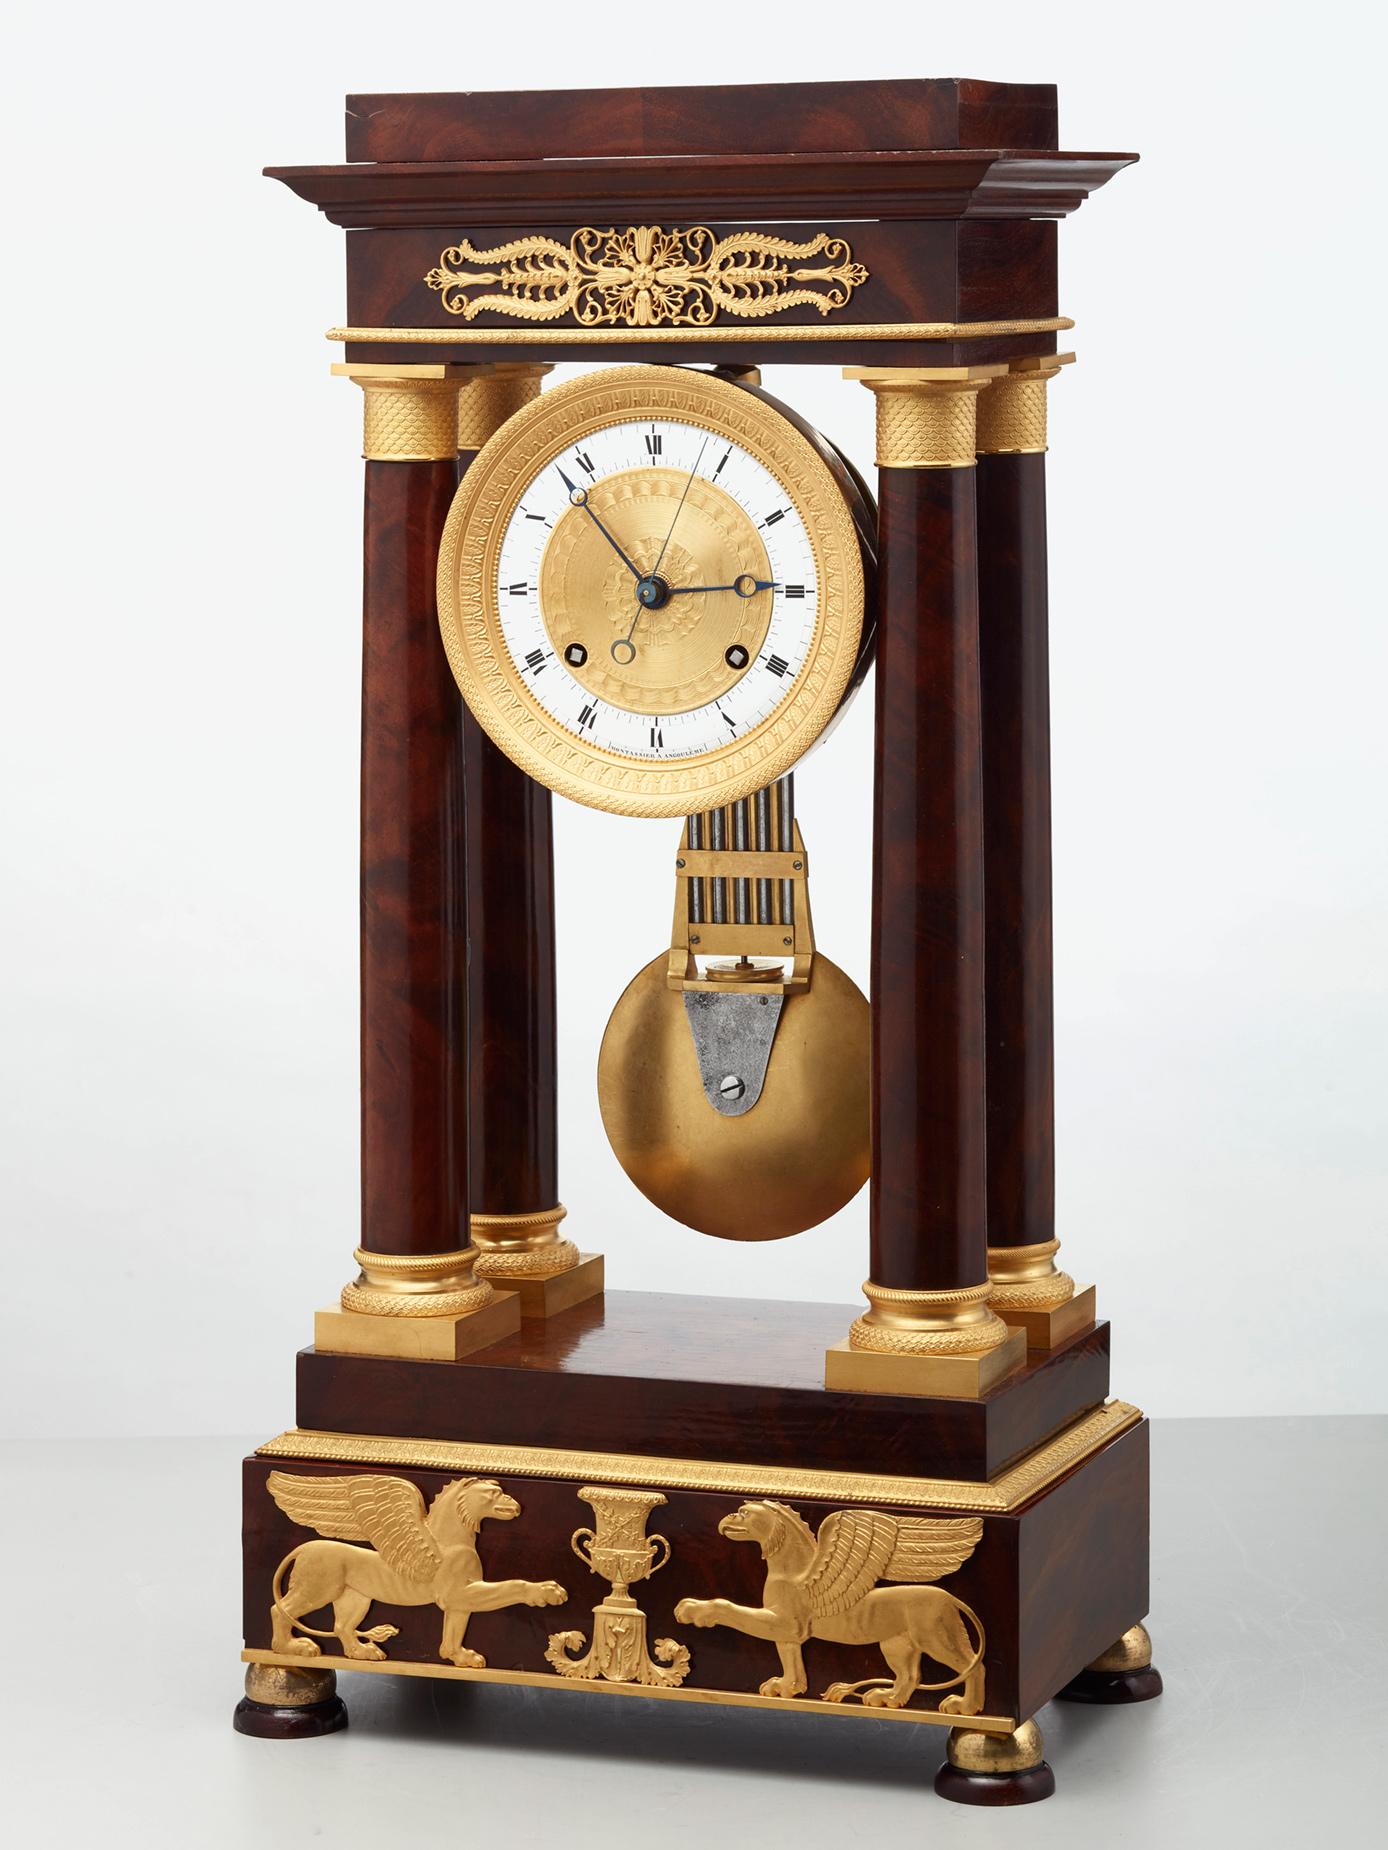 Das Uhrwerk ist an einem Säulengang in vier Säulen aufgehängt. Das Mahagonigehäuse ist mit sehr schönen gegossenen und vergoldeten Bronzen verziert, darunter zwei Greifen, die einer Siegesurne gegenüberstehen. Die Uhr ist auf vier schönen Füßen